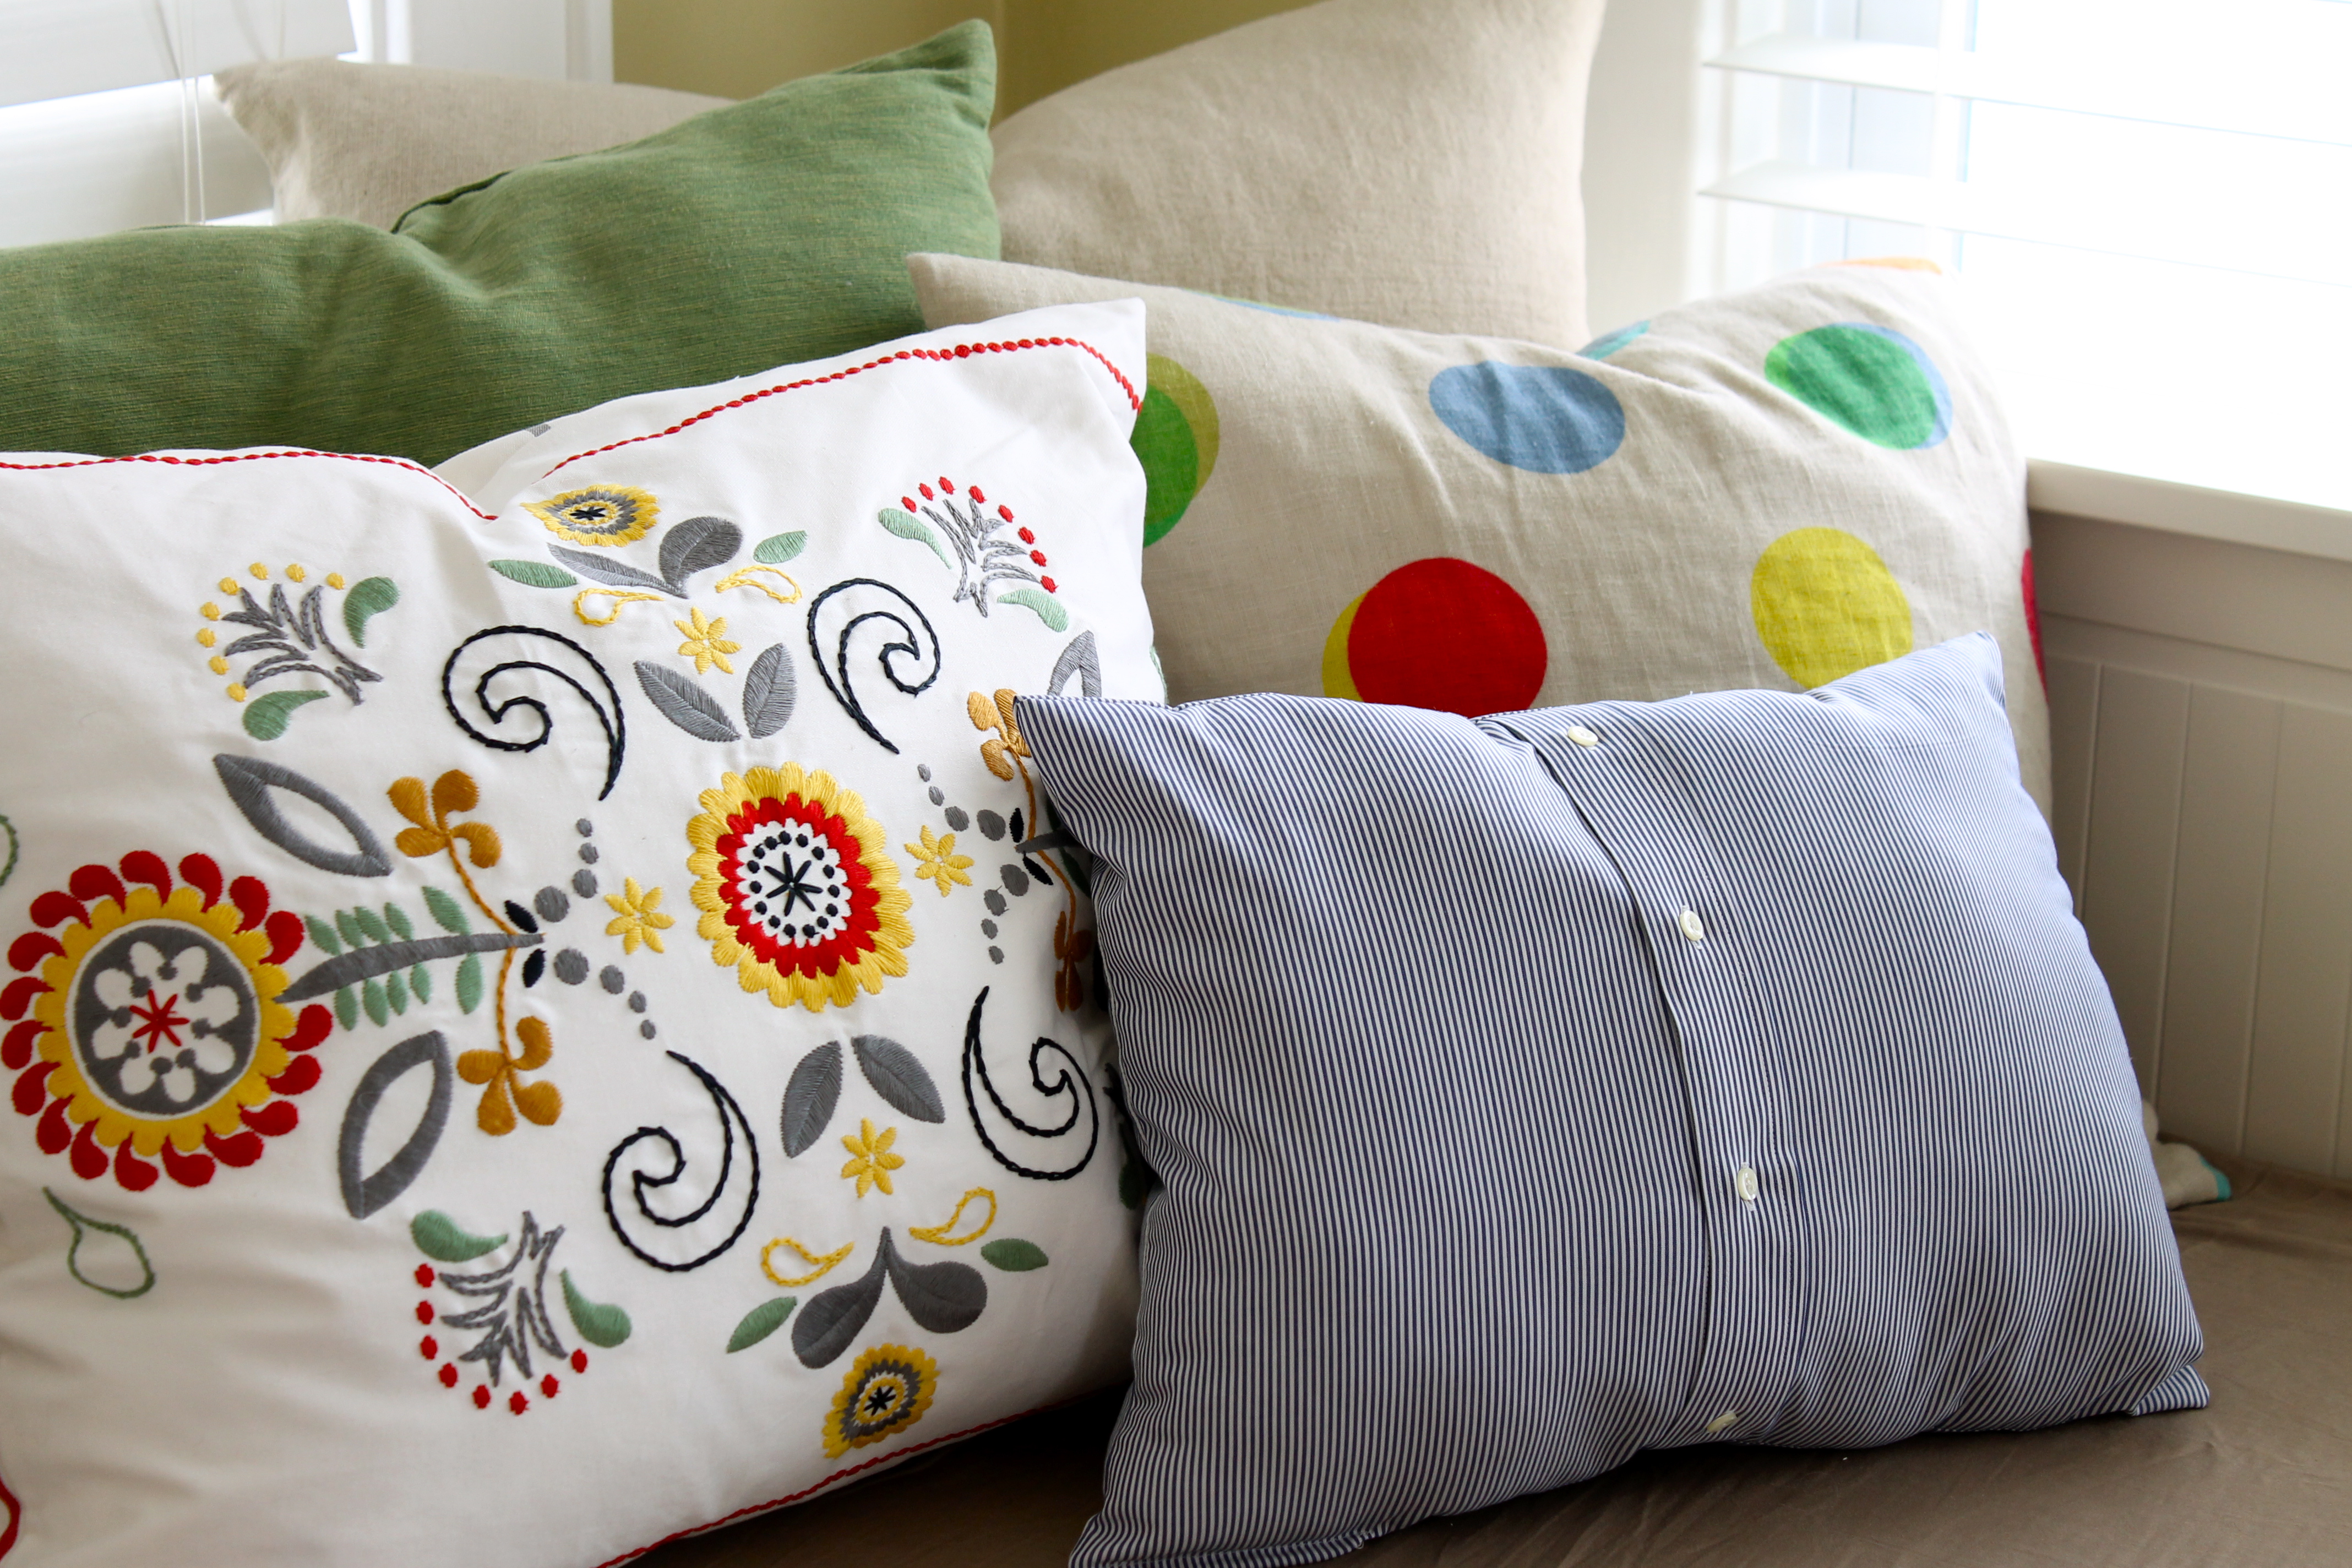 IMG 6084 - DIY Ralph Lauren Pillows, Revisited